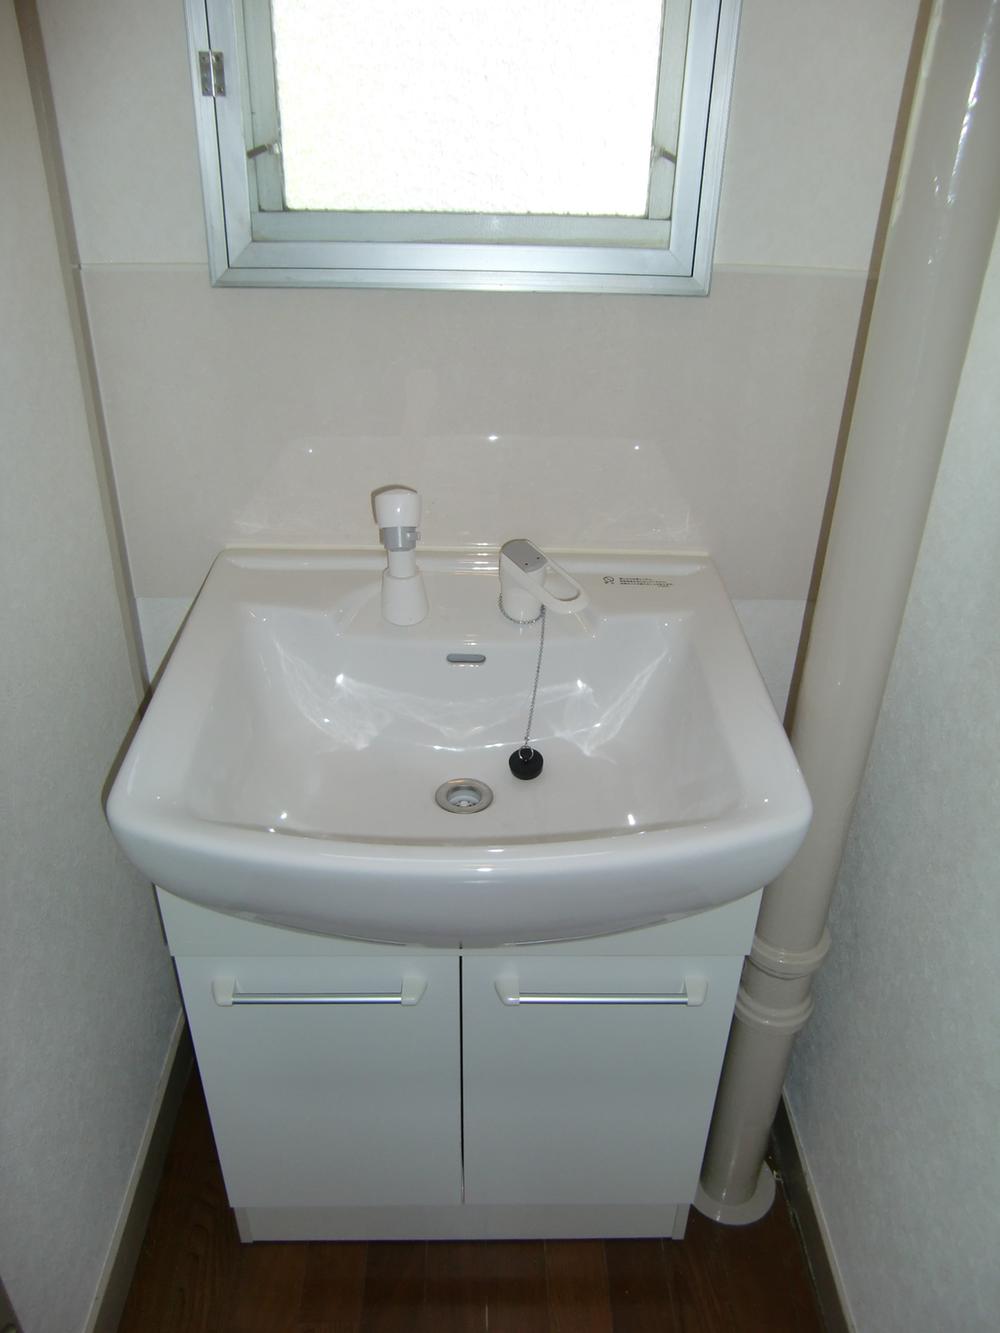 Wash basin, toilet. Vanity (August 19, 2013) Shooting